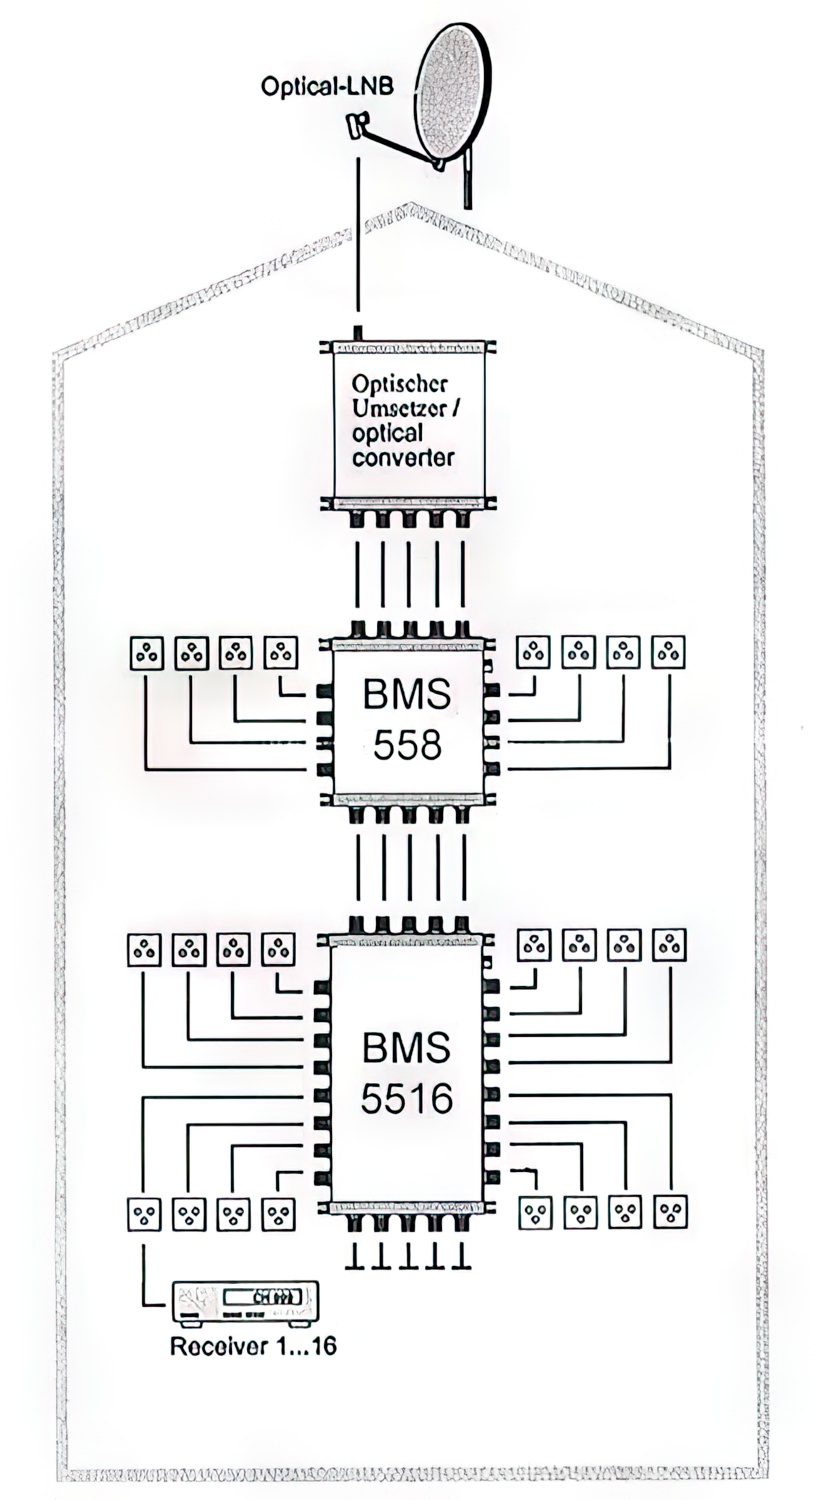 Multischalter 5/8 - Bauckhage BMS558DC Kaskade für 8 Teilnehmer-/bilder/big/bms55_schematic.jpg